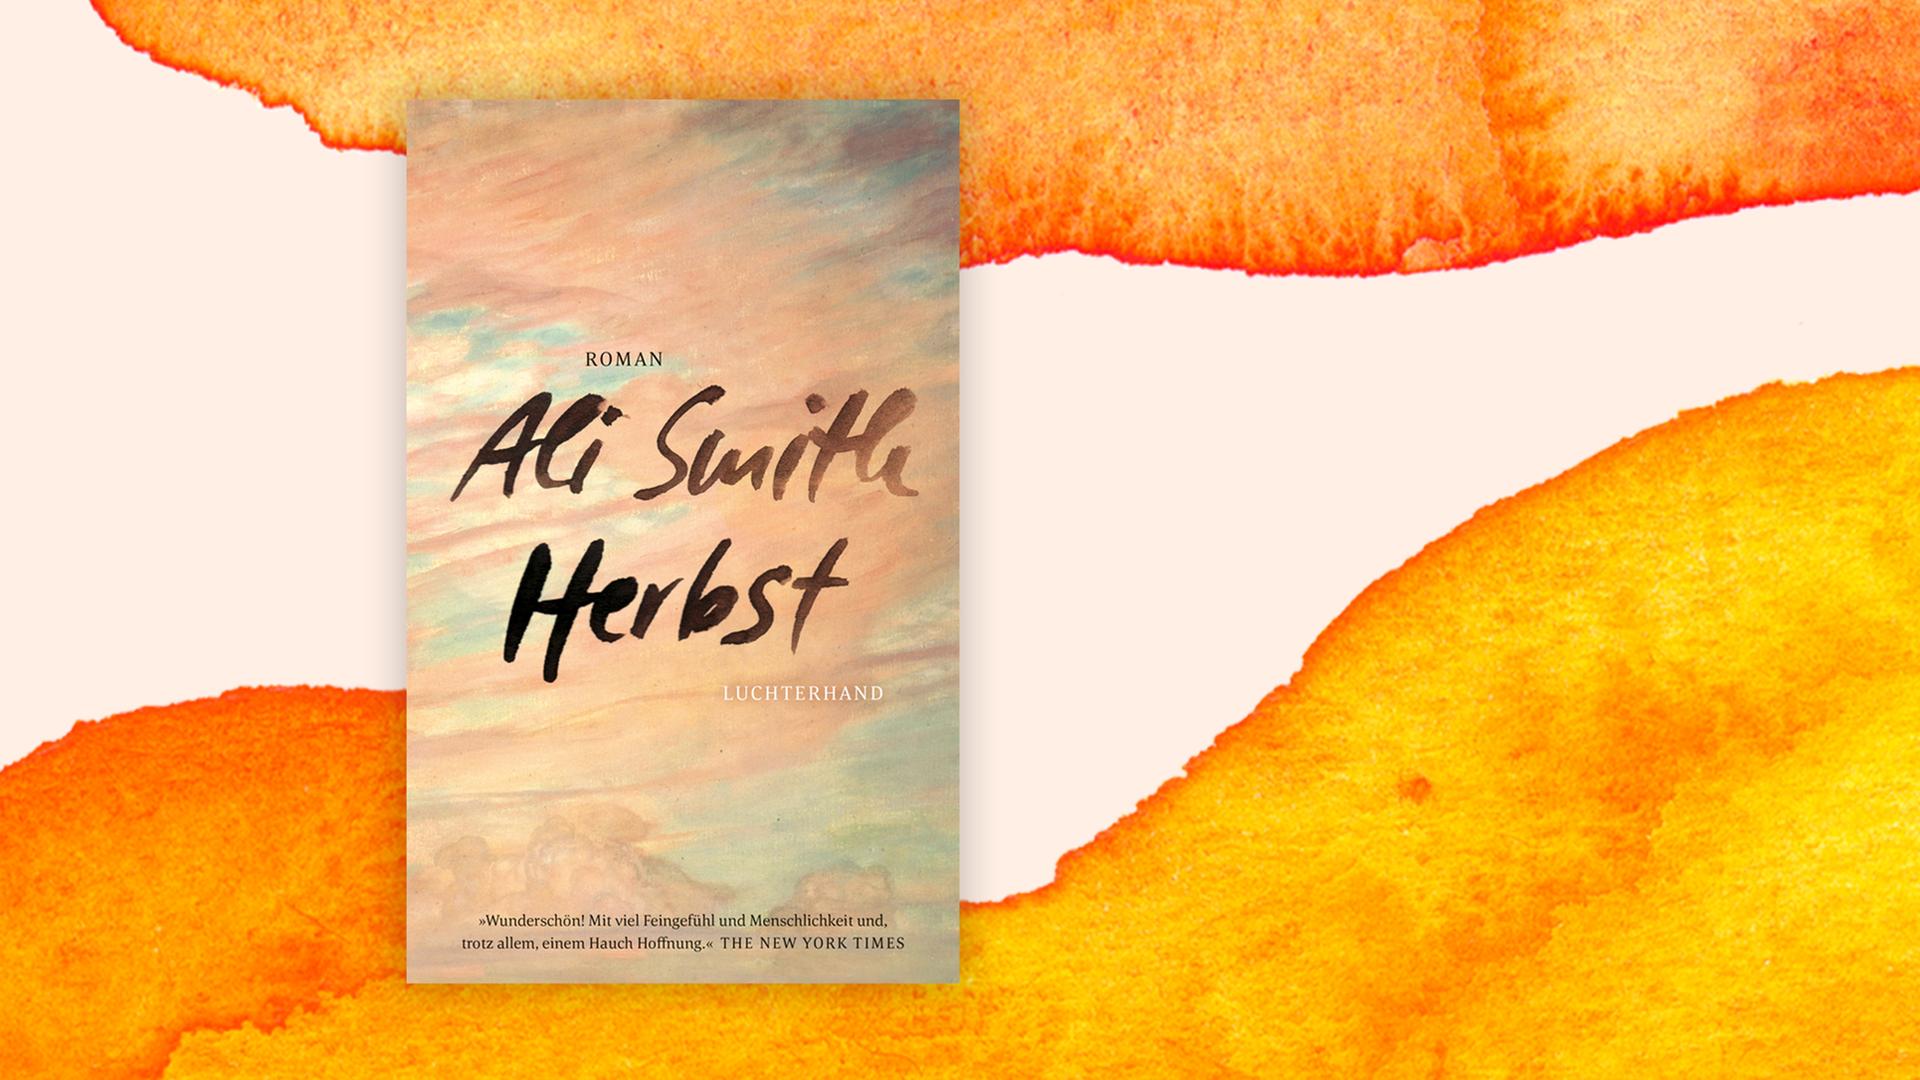 Das abstrakt in Herbstfarben gestaltete Cover des Buches "Herbst" von Ali Smith auf einem orange-weißem Hintergrund.